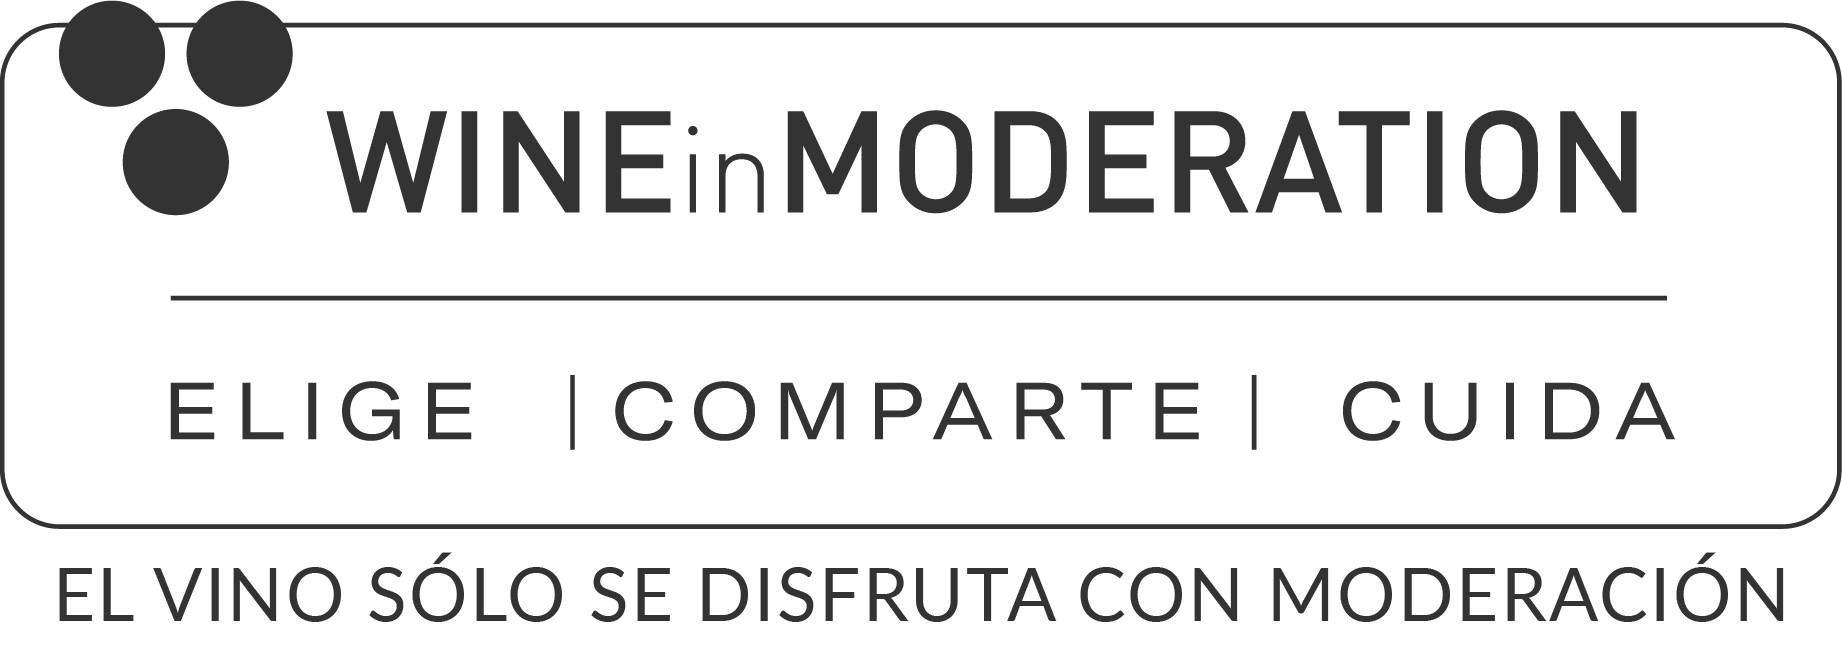 Logo Bebe con moderacion